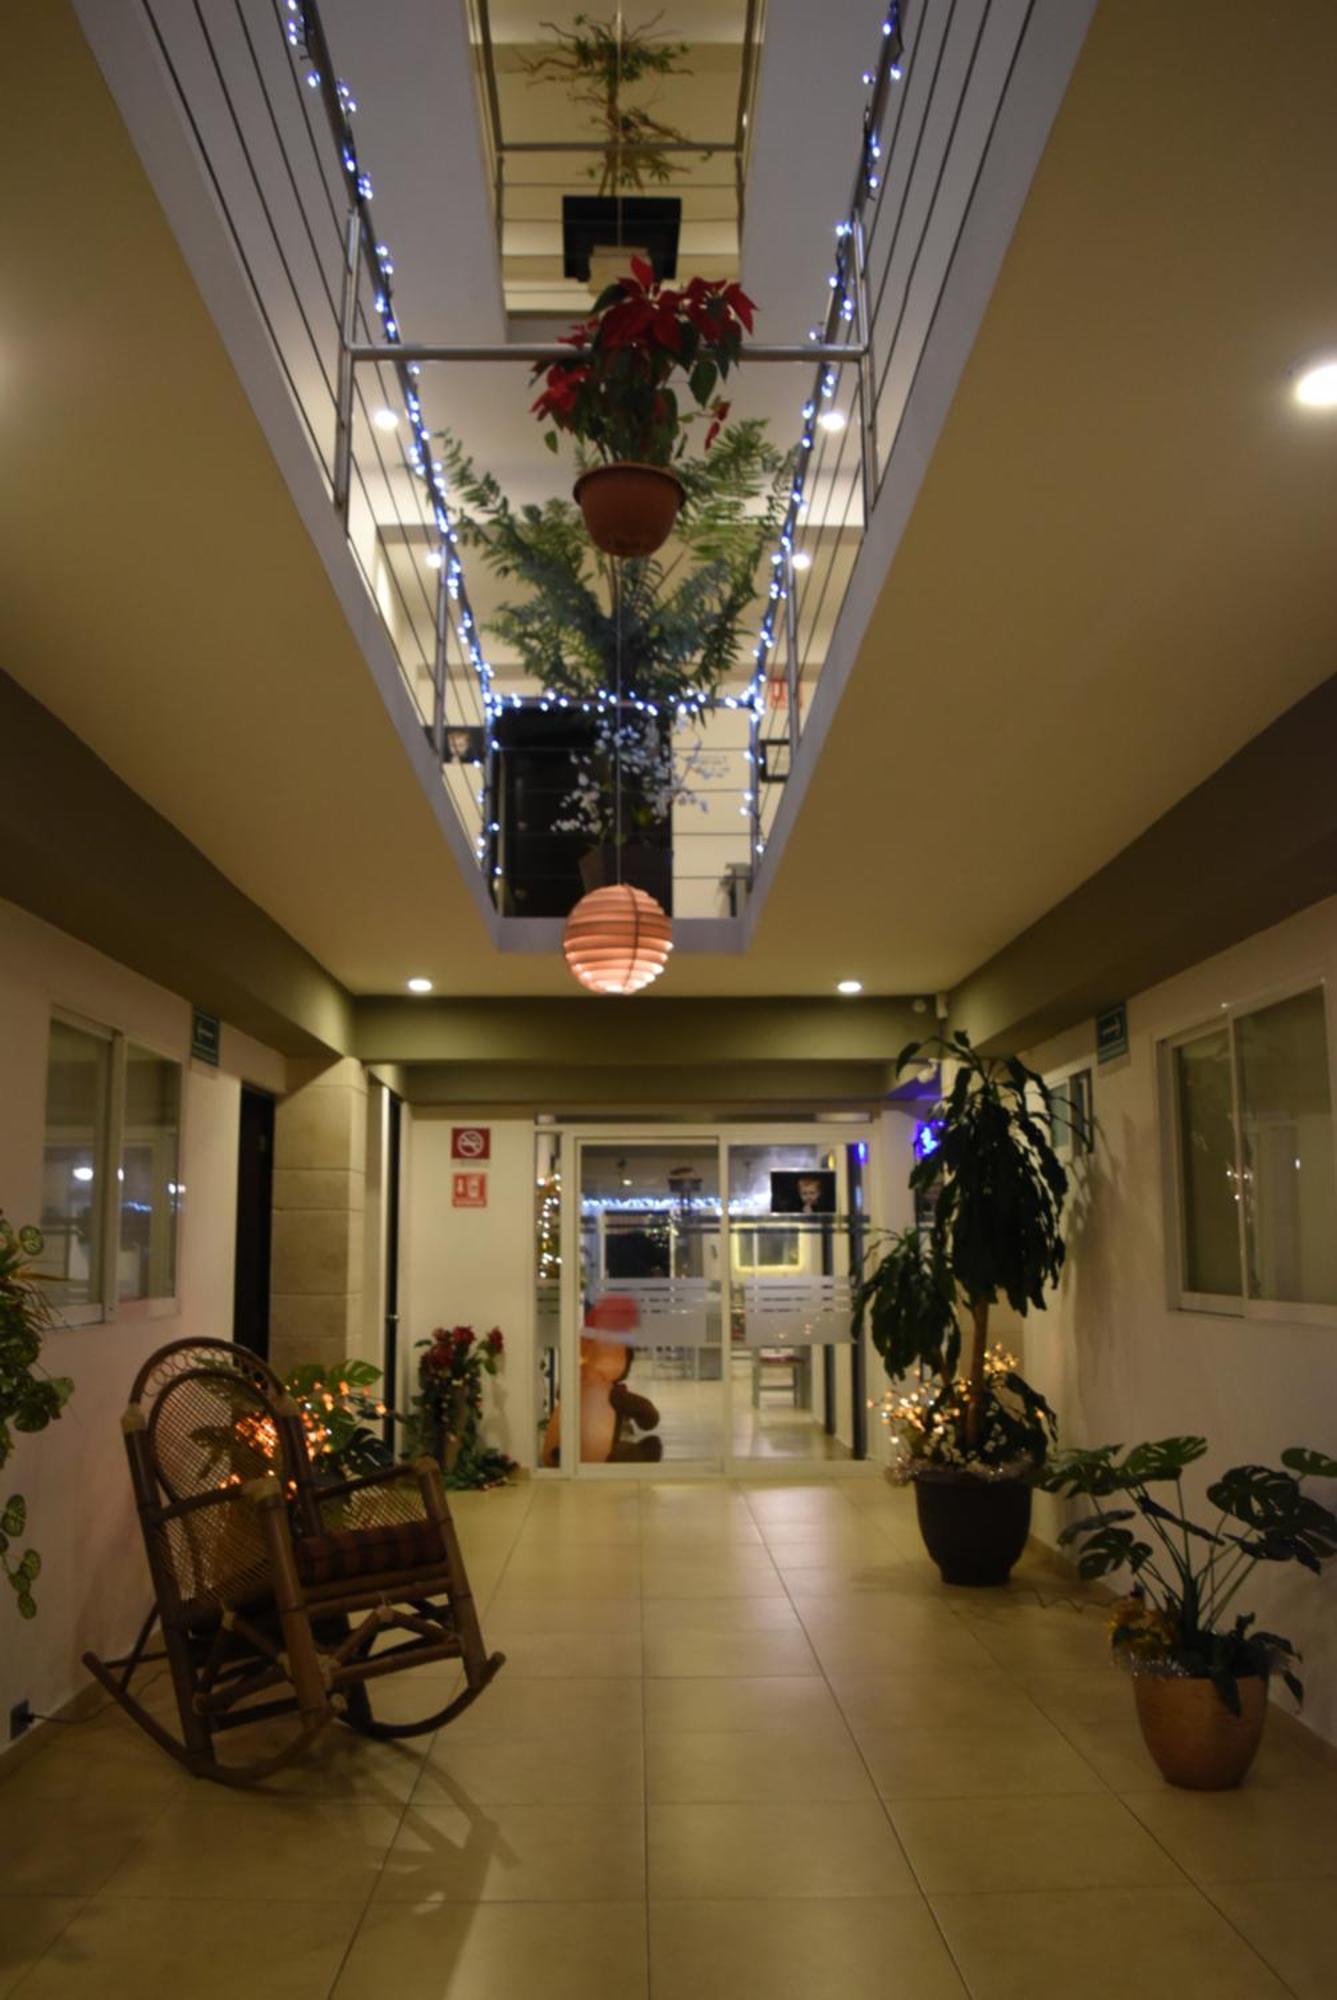 Hotel Boutique Boca - Veracruz Boca del Río Exterior foto